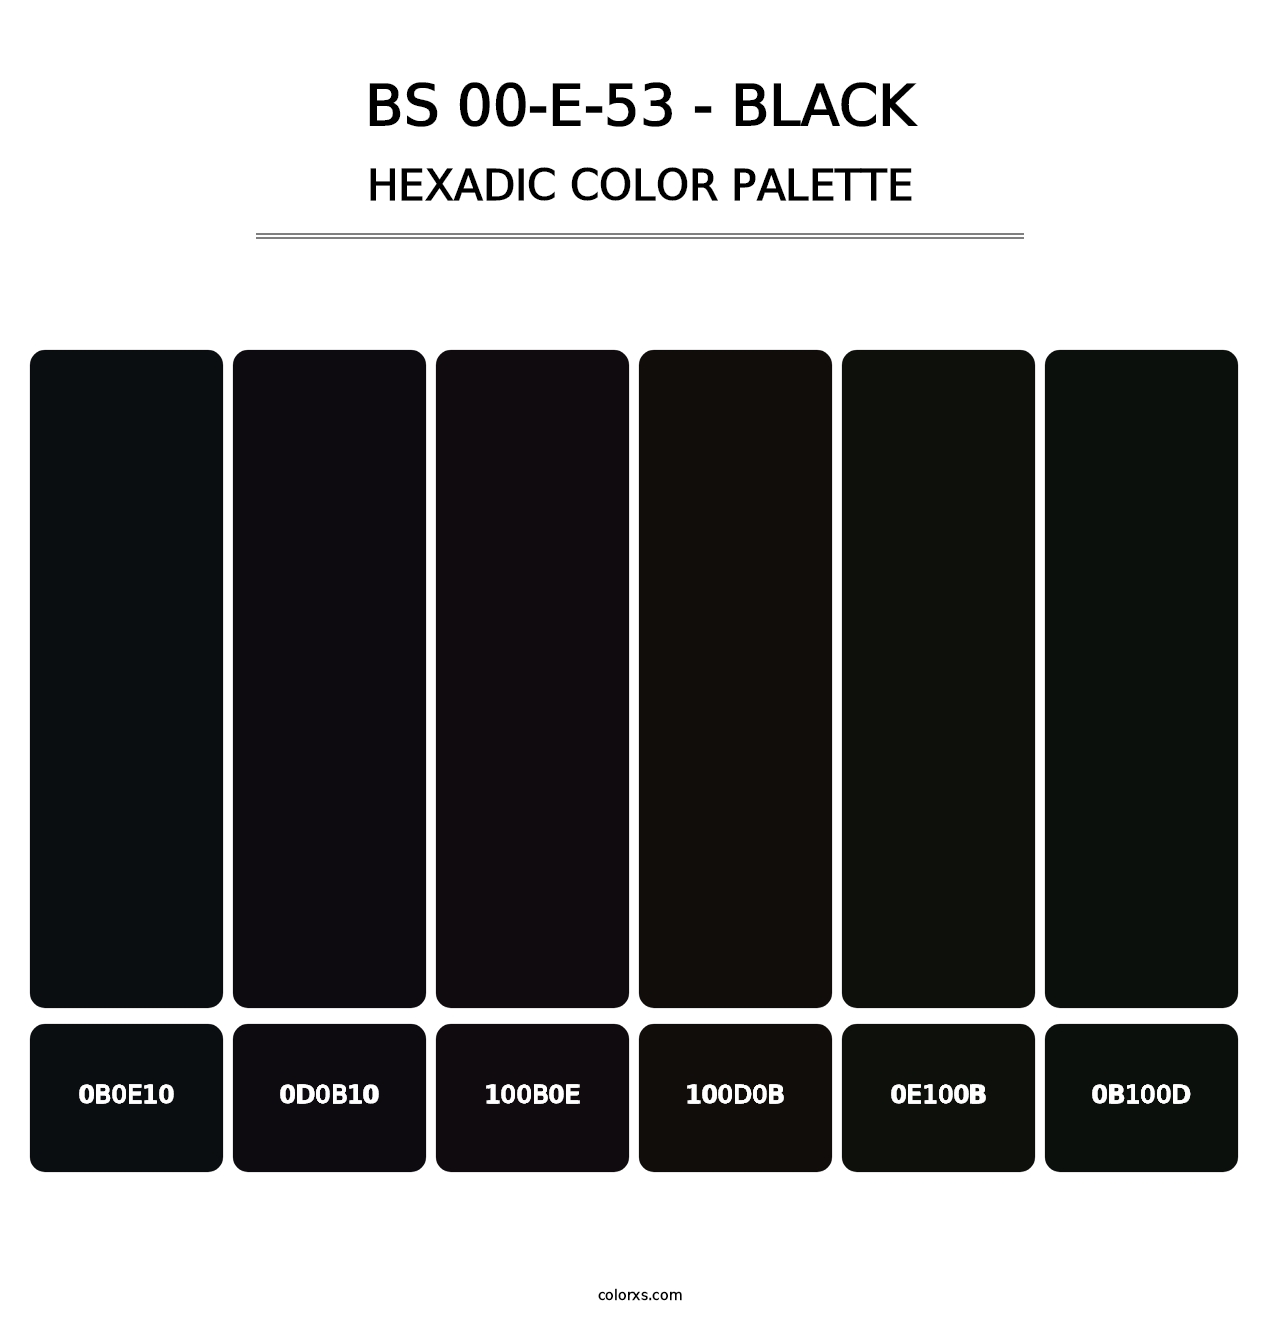 BS 00-E-53 - Black - Hexadic Color Palette